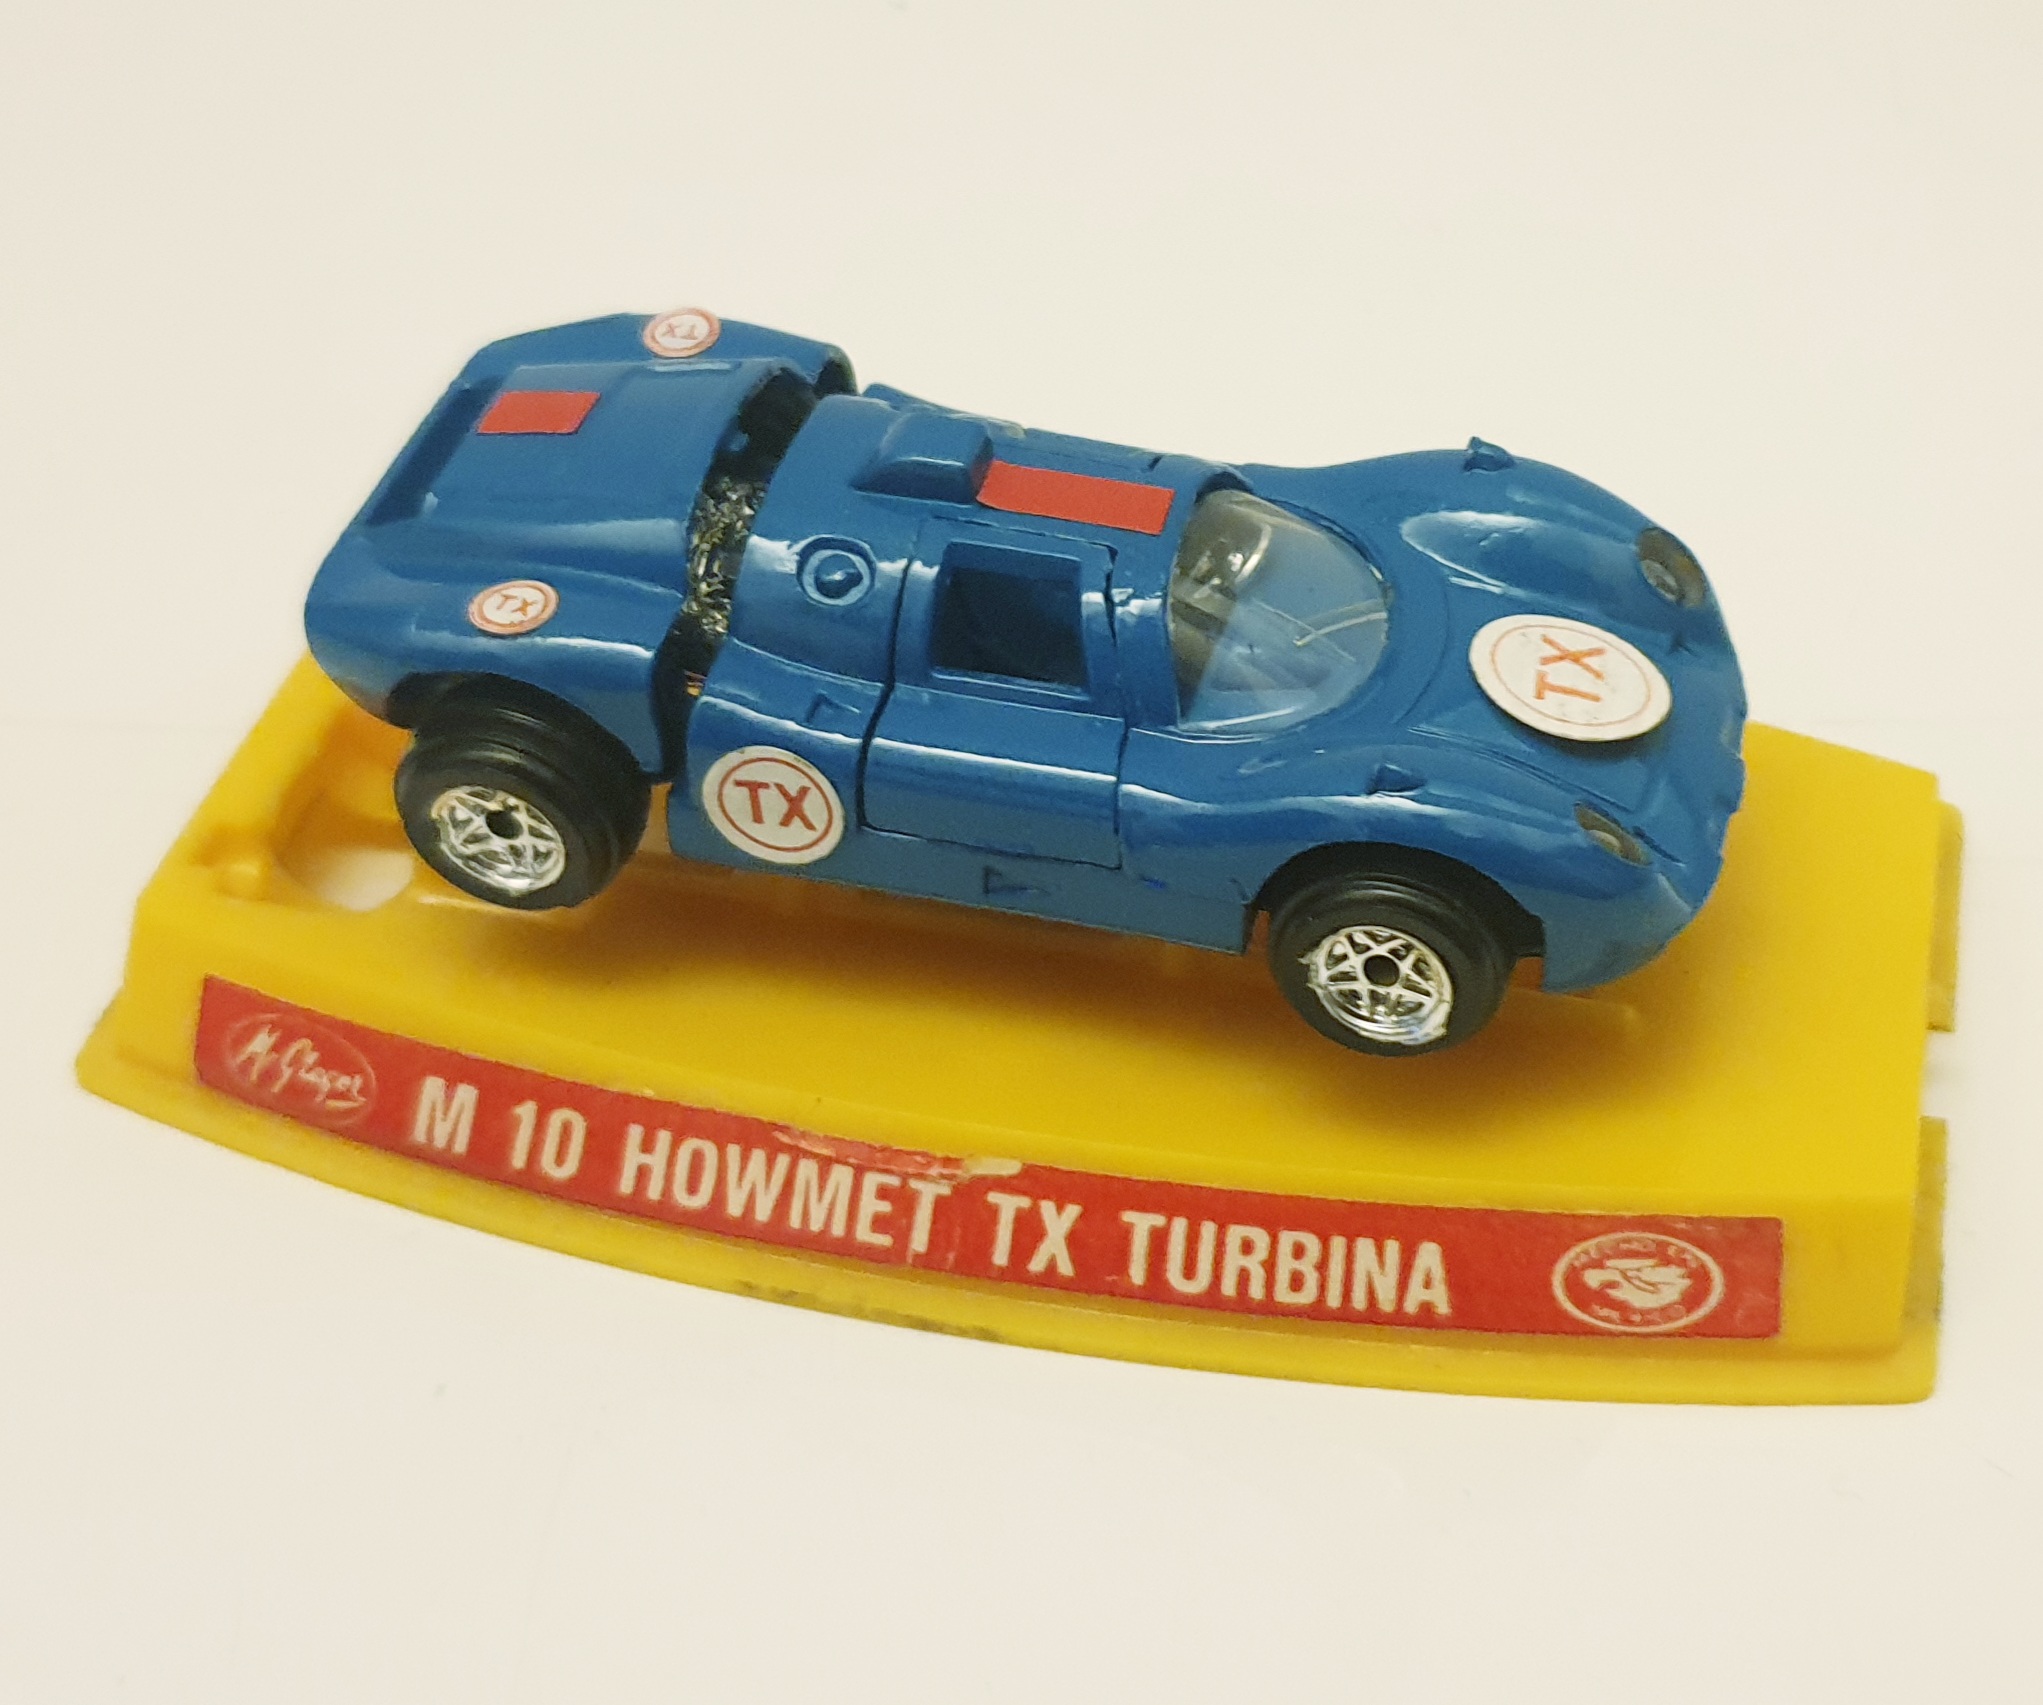 Howmet TX Turbine